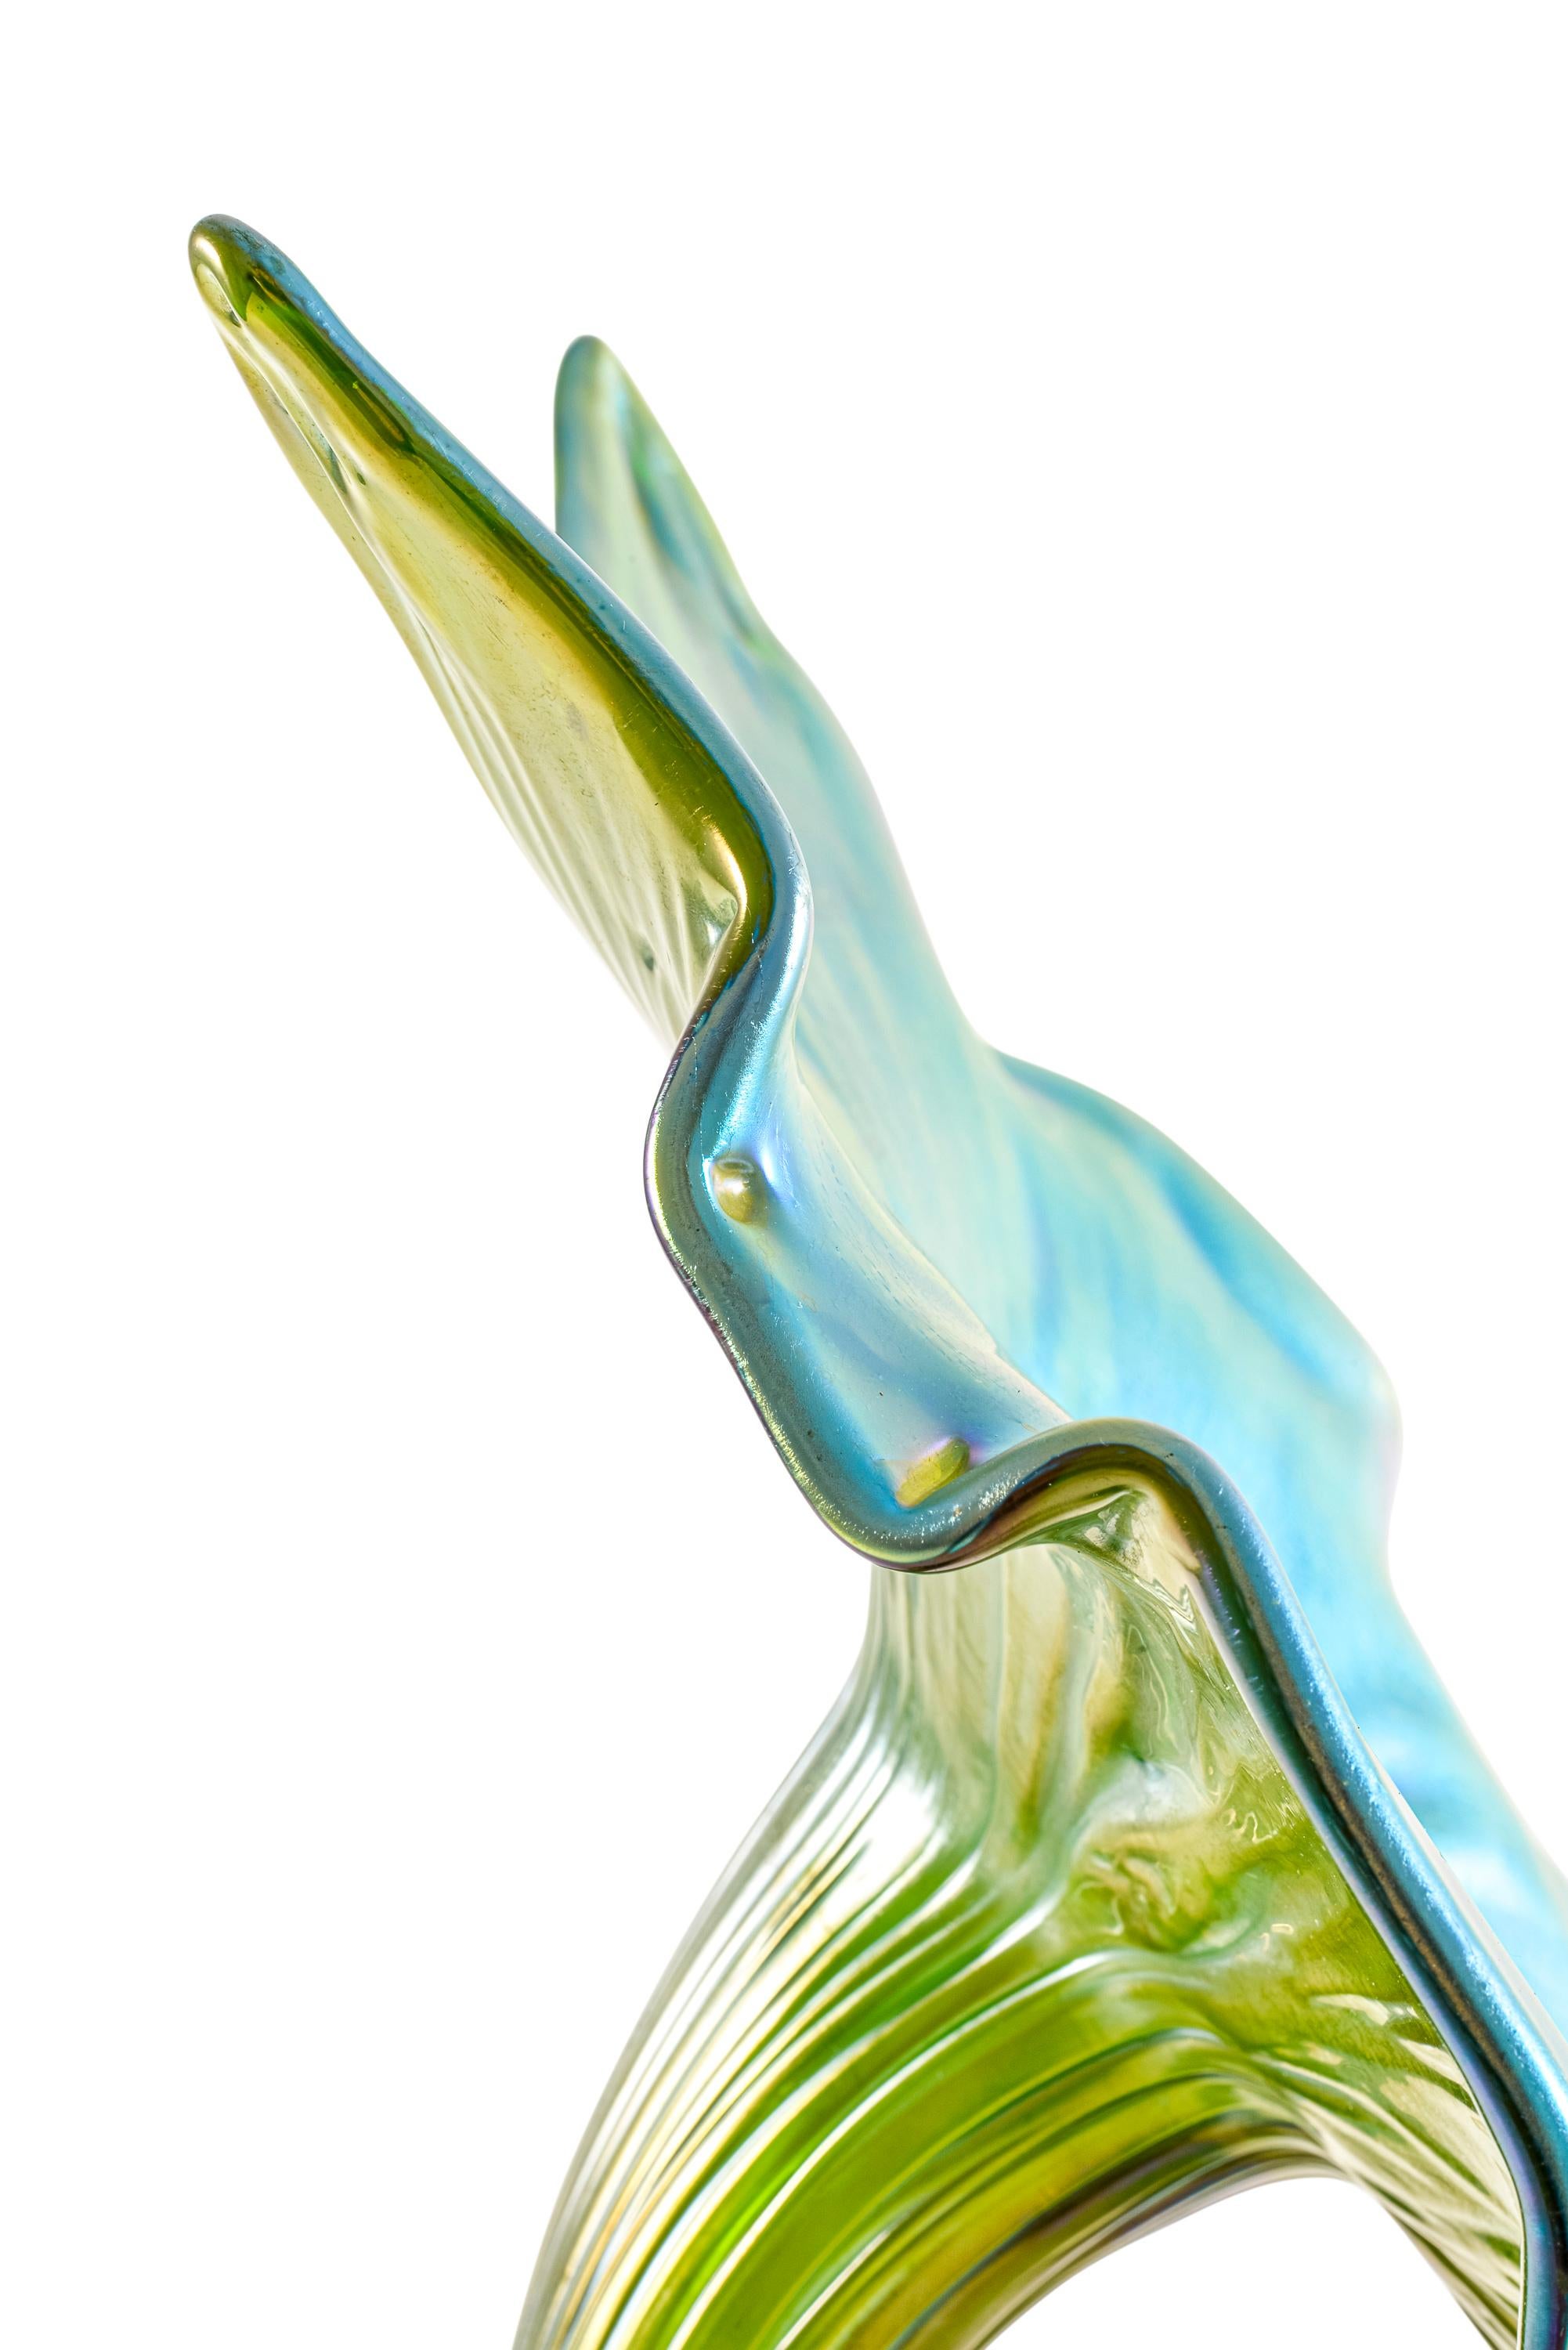 Late 19th Century Jack-in-the-Pulpit Flower Vase Loetz Glass circa 1899 Austrian Jugendstil Green For Sale